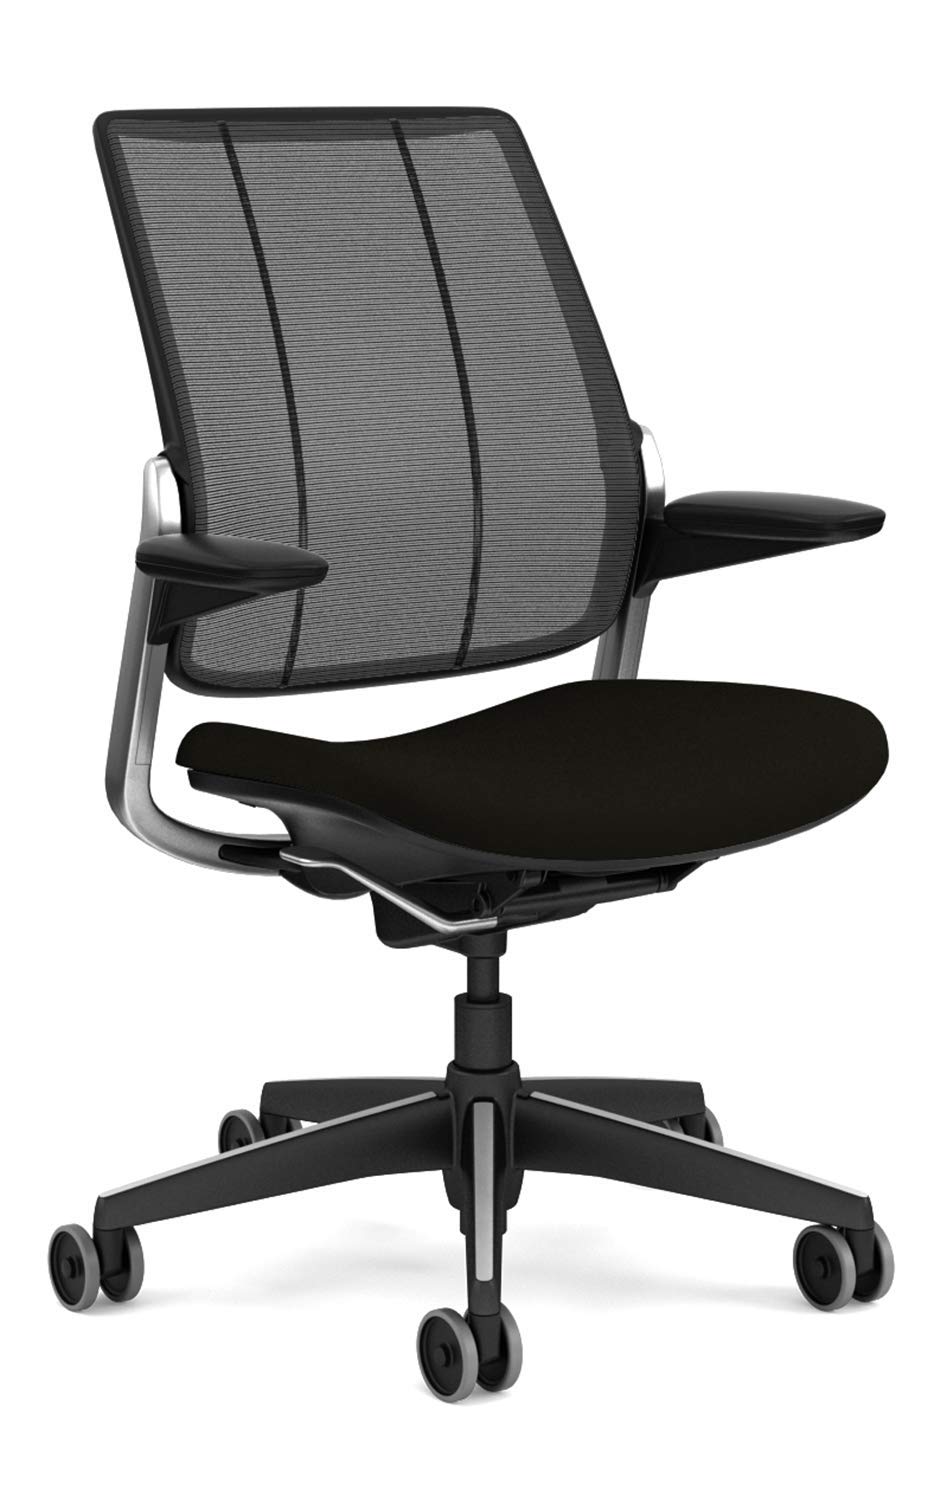 
                                    
                                Non tutte le sedie sono uguali: ecco i modelli ergonomici